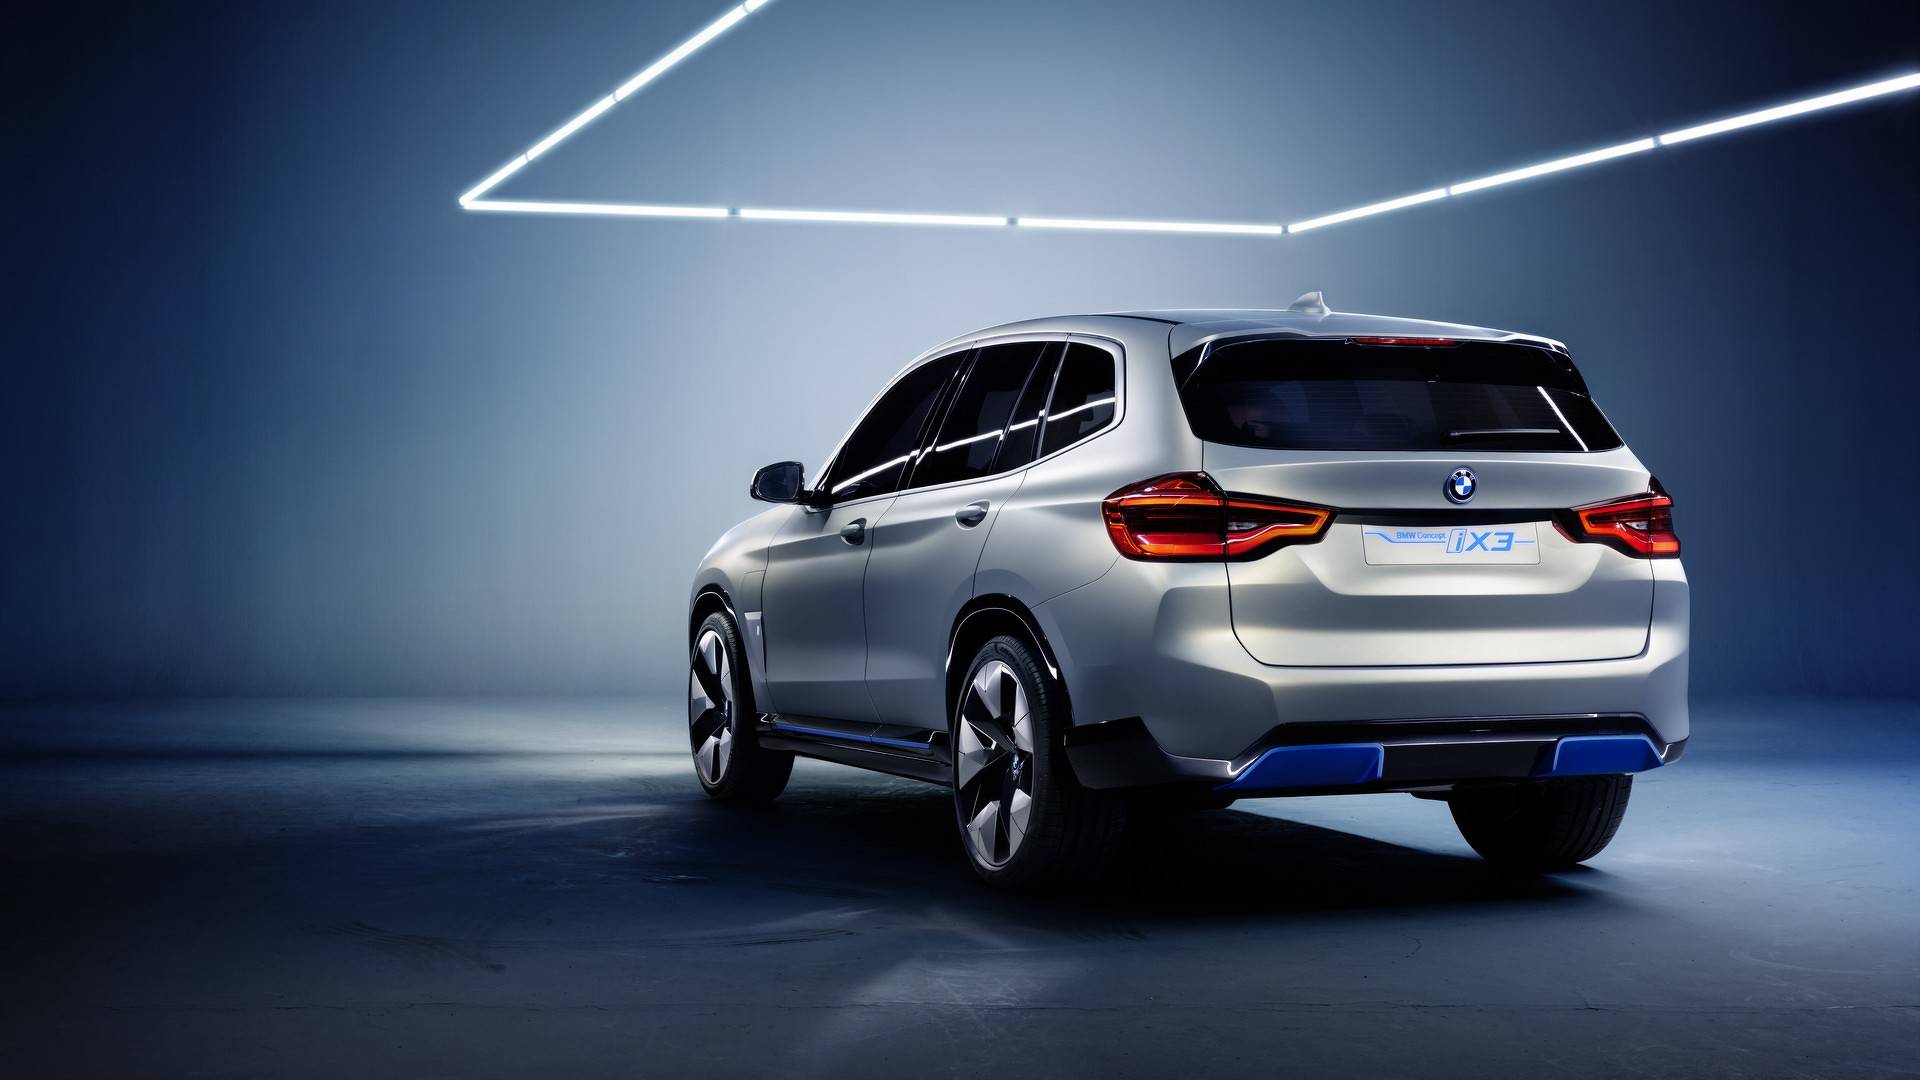 BMW Concept iX3: anticipando un futuro muy cercano